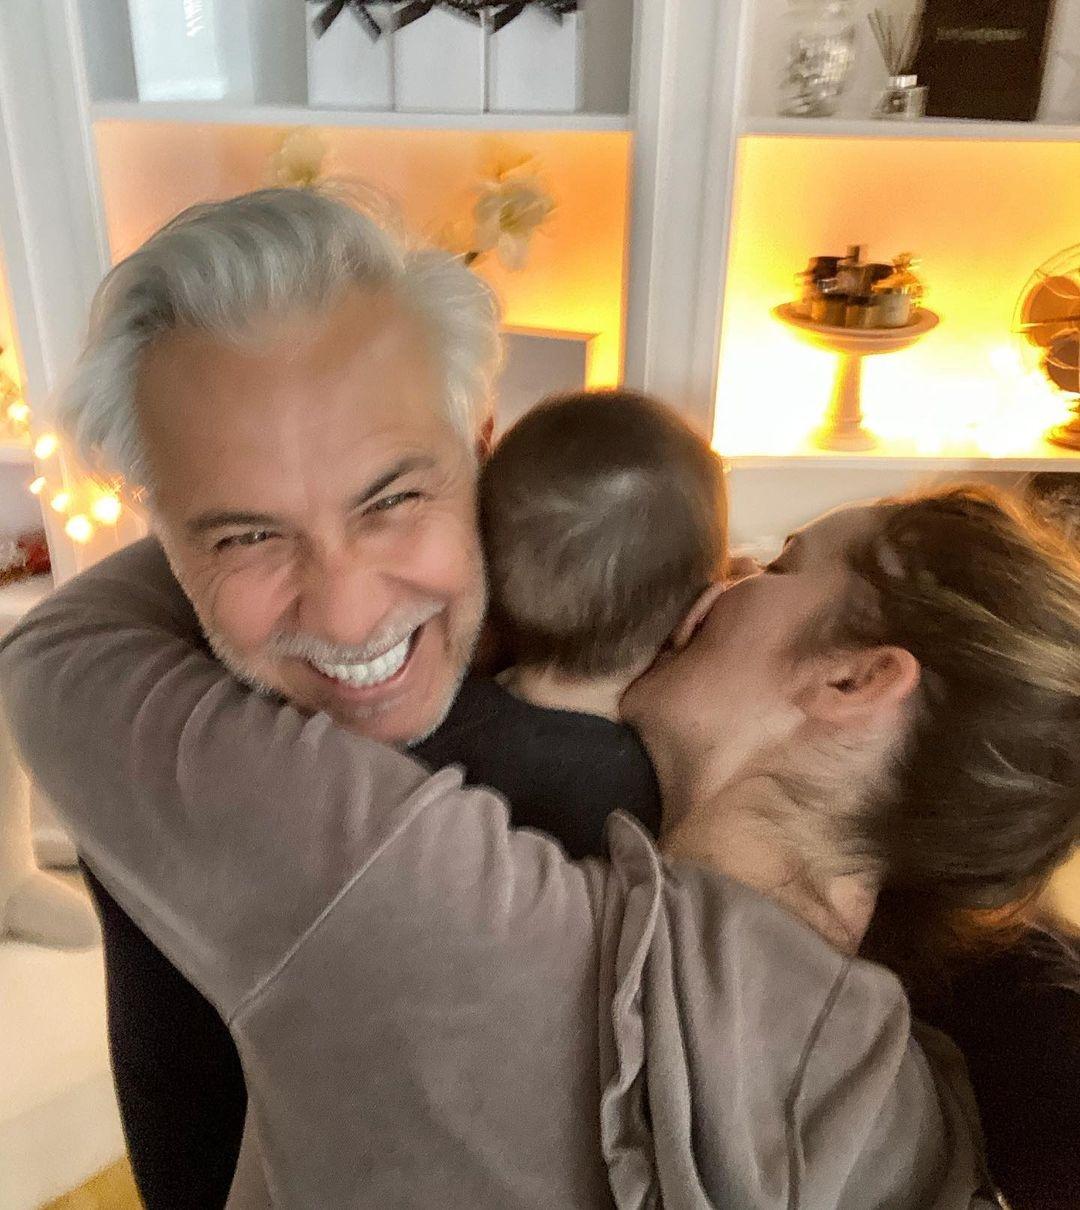 Χάρης Χριστόπουλος : Δείτε την τρυφερή φωτογραφία αγκαλιά με τον γιο του – Λιώνουμε